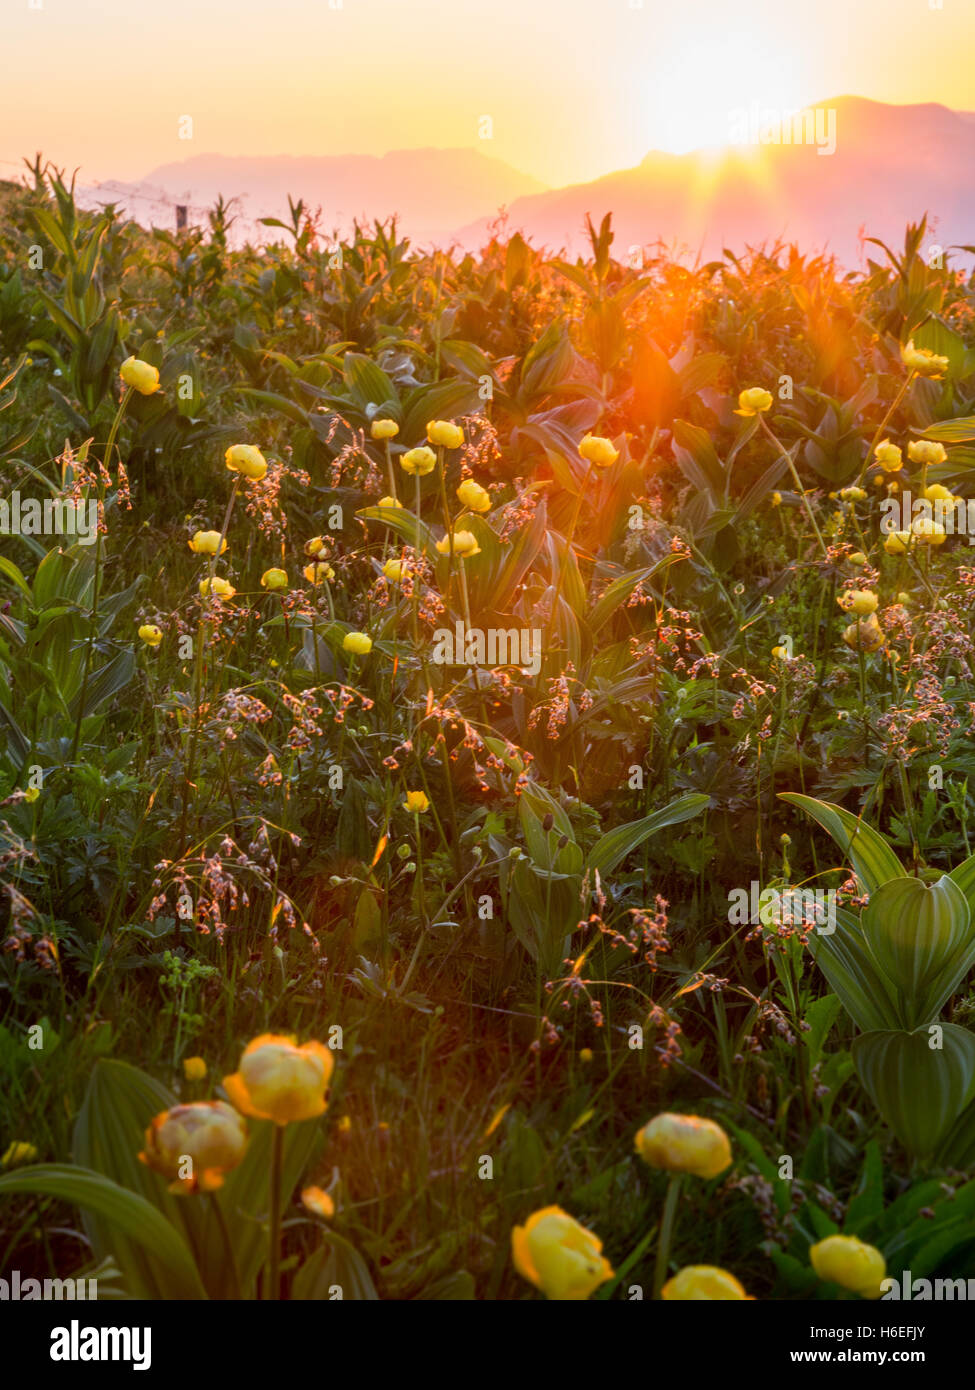 Die Sonne geht hinter den Bergen und strahlt ein warmes Licht über gelbe Blumen im Vordergrund. Stockfoto